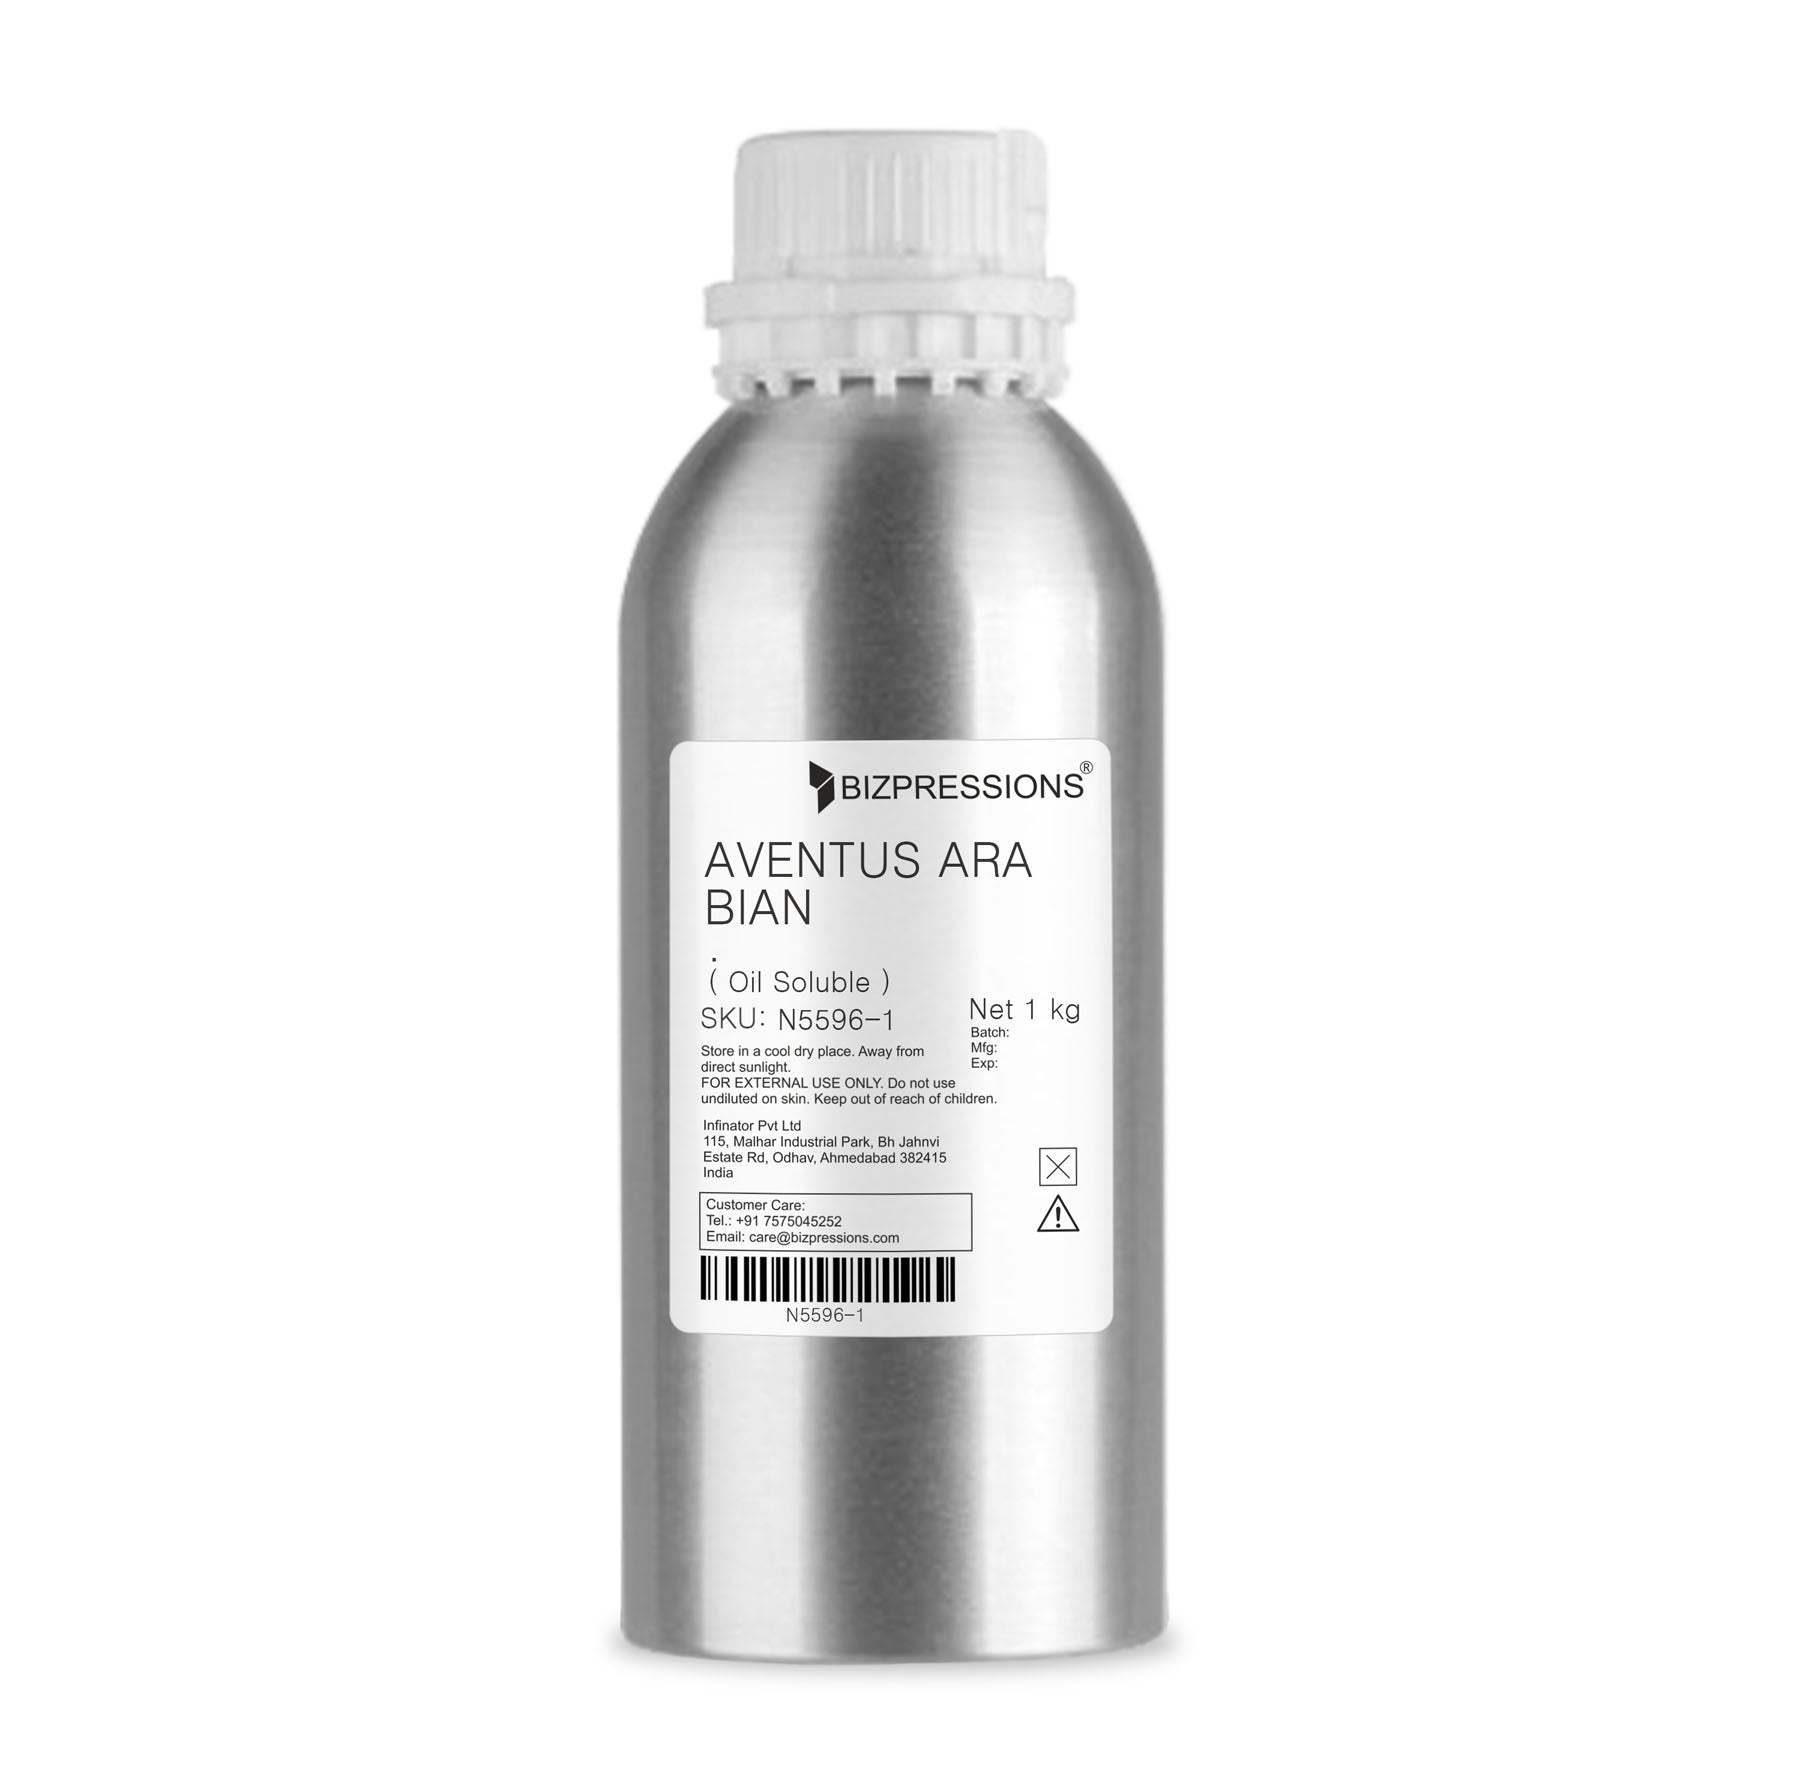 AVENTUS ARABIAN - Fragrance ( Oil Soluble ) - 1 kg